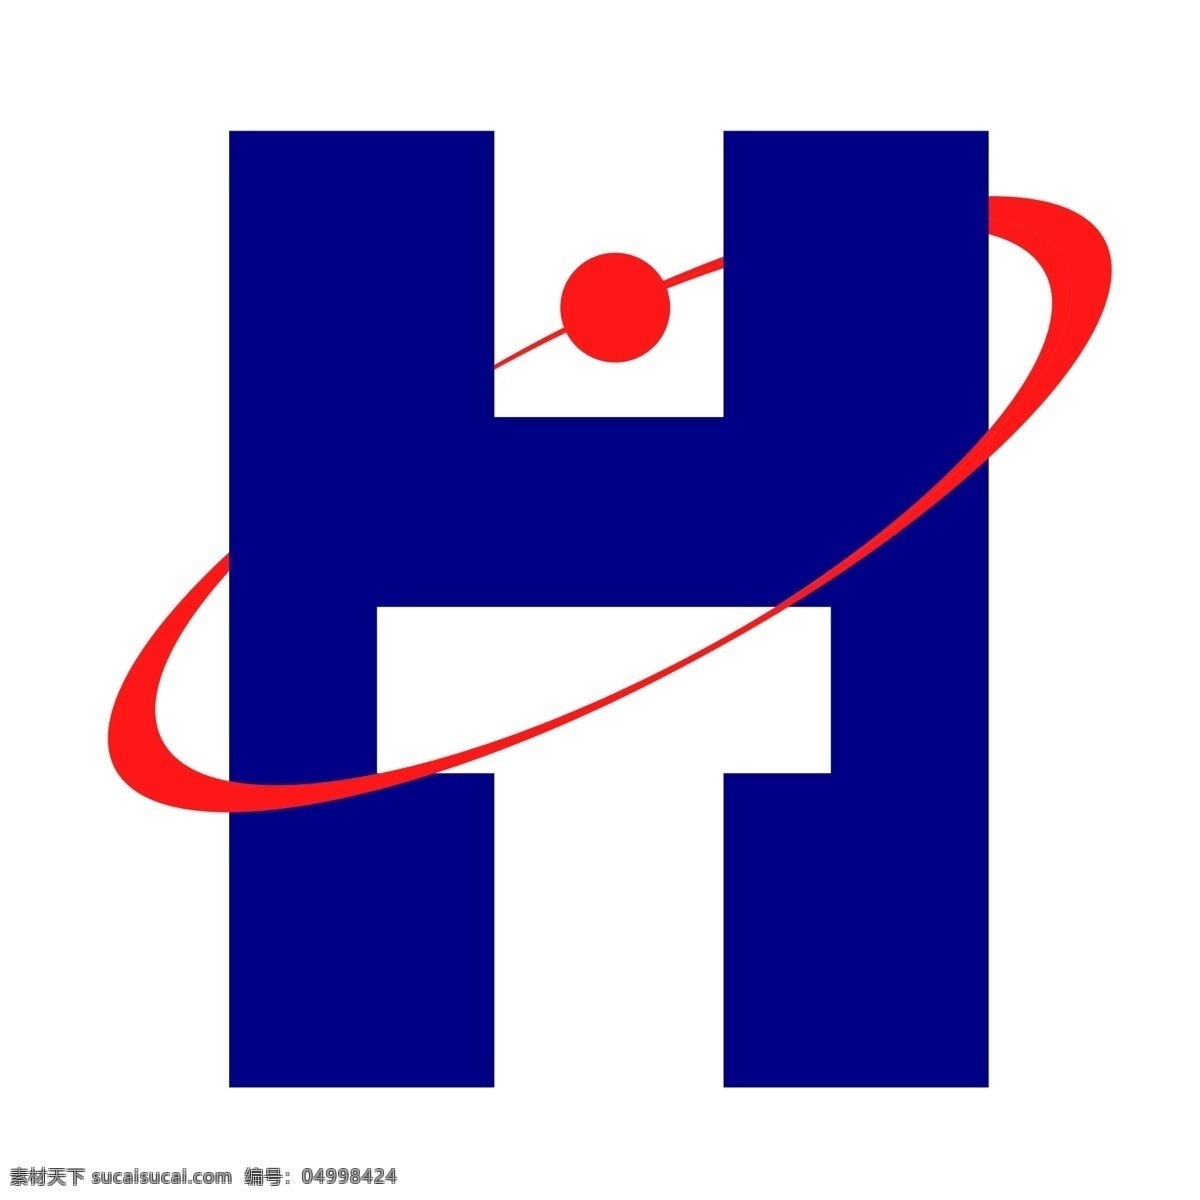 企业标识设计 ht标志 htlogo 企业标志 th标志 企业标识